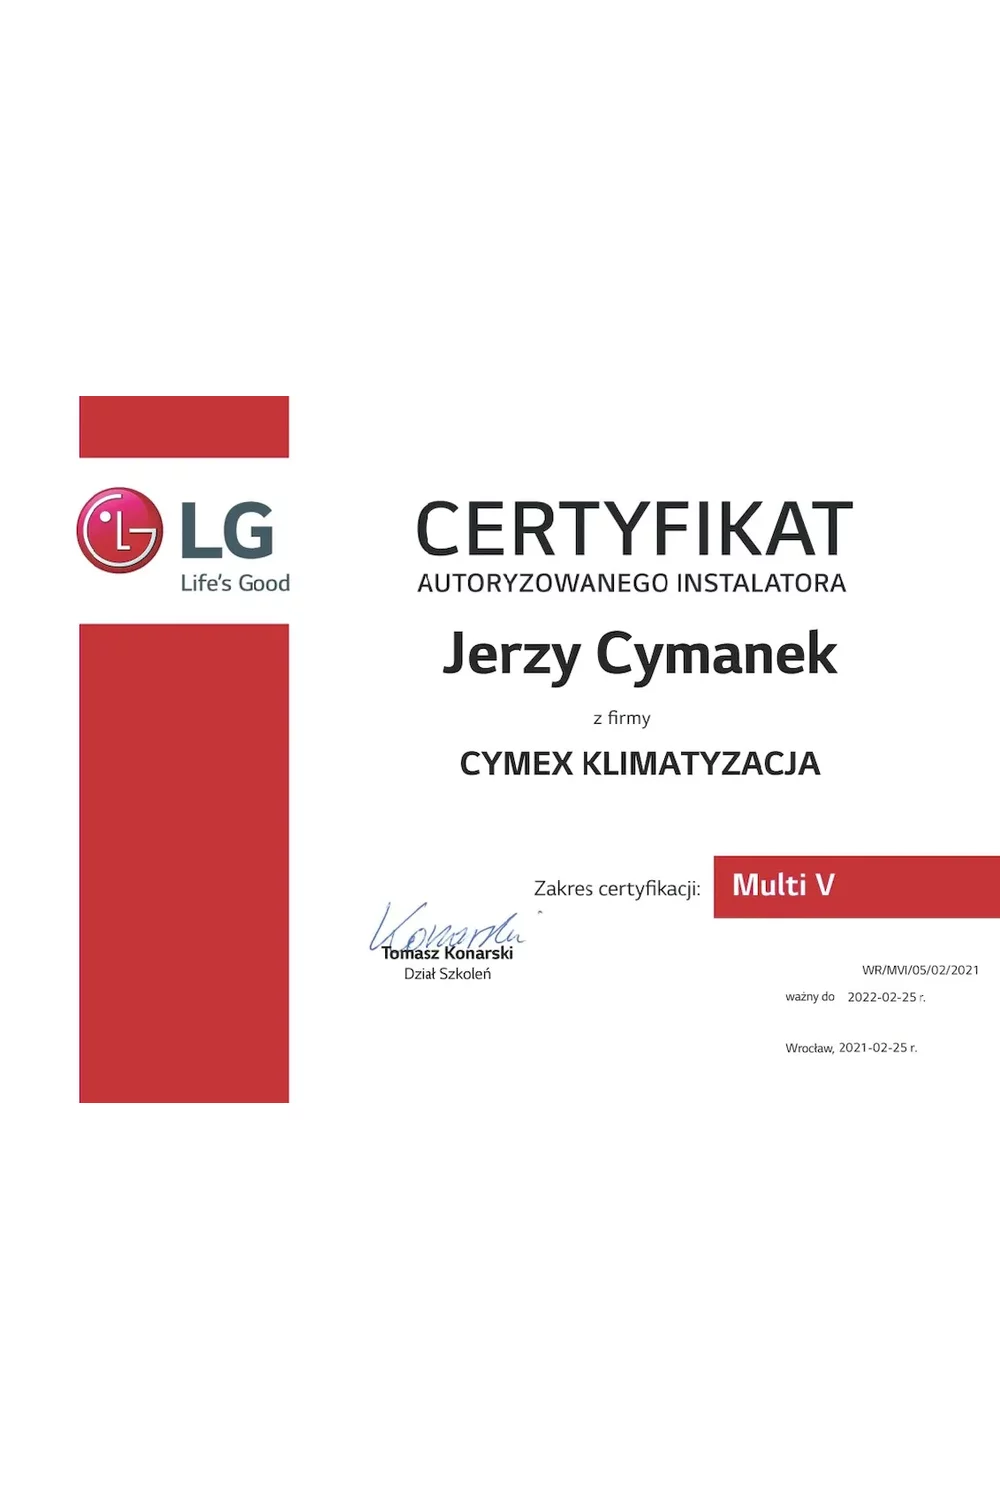 Certyfikat Autoryzowanego Instalatora LG 2021 - Multi V - zdjęcie